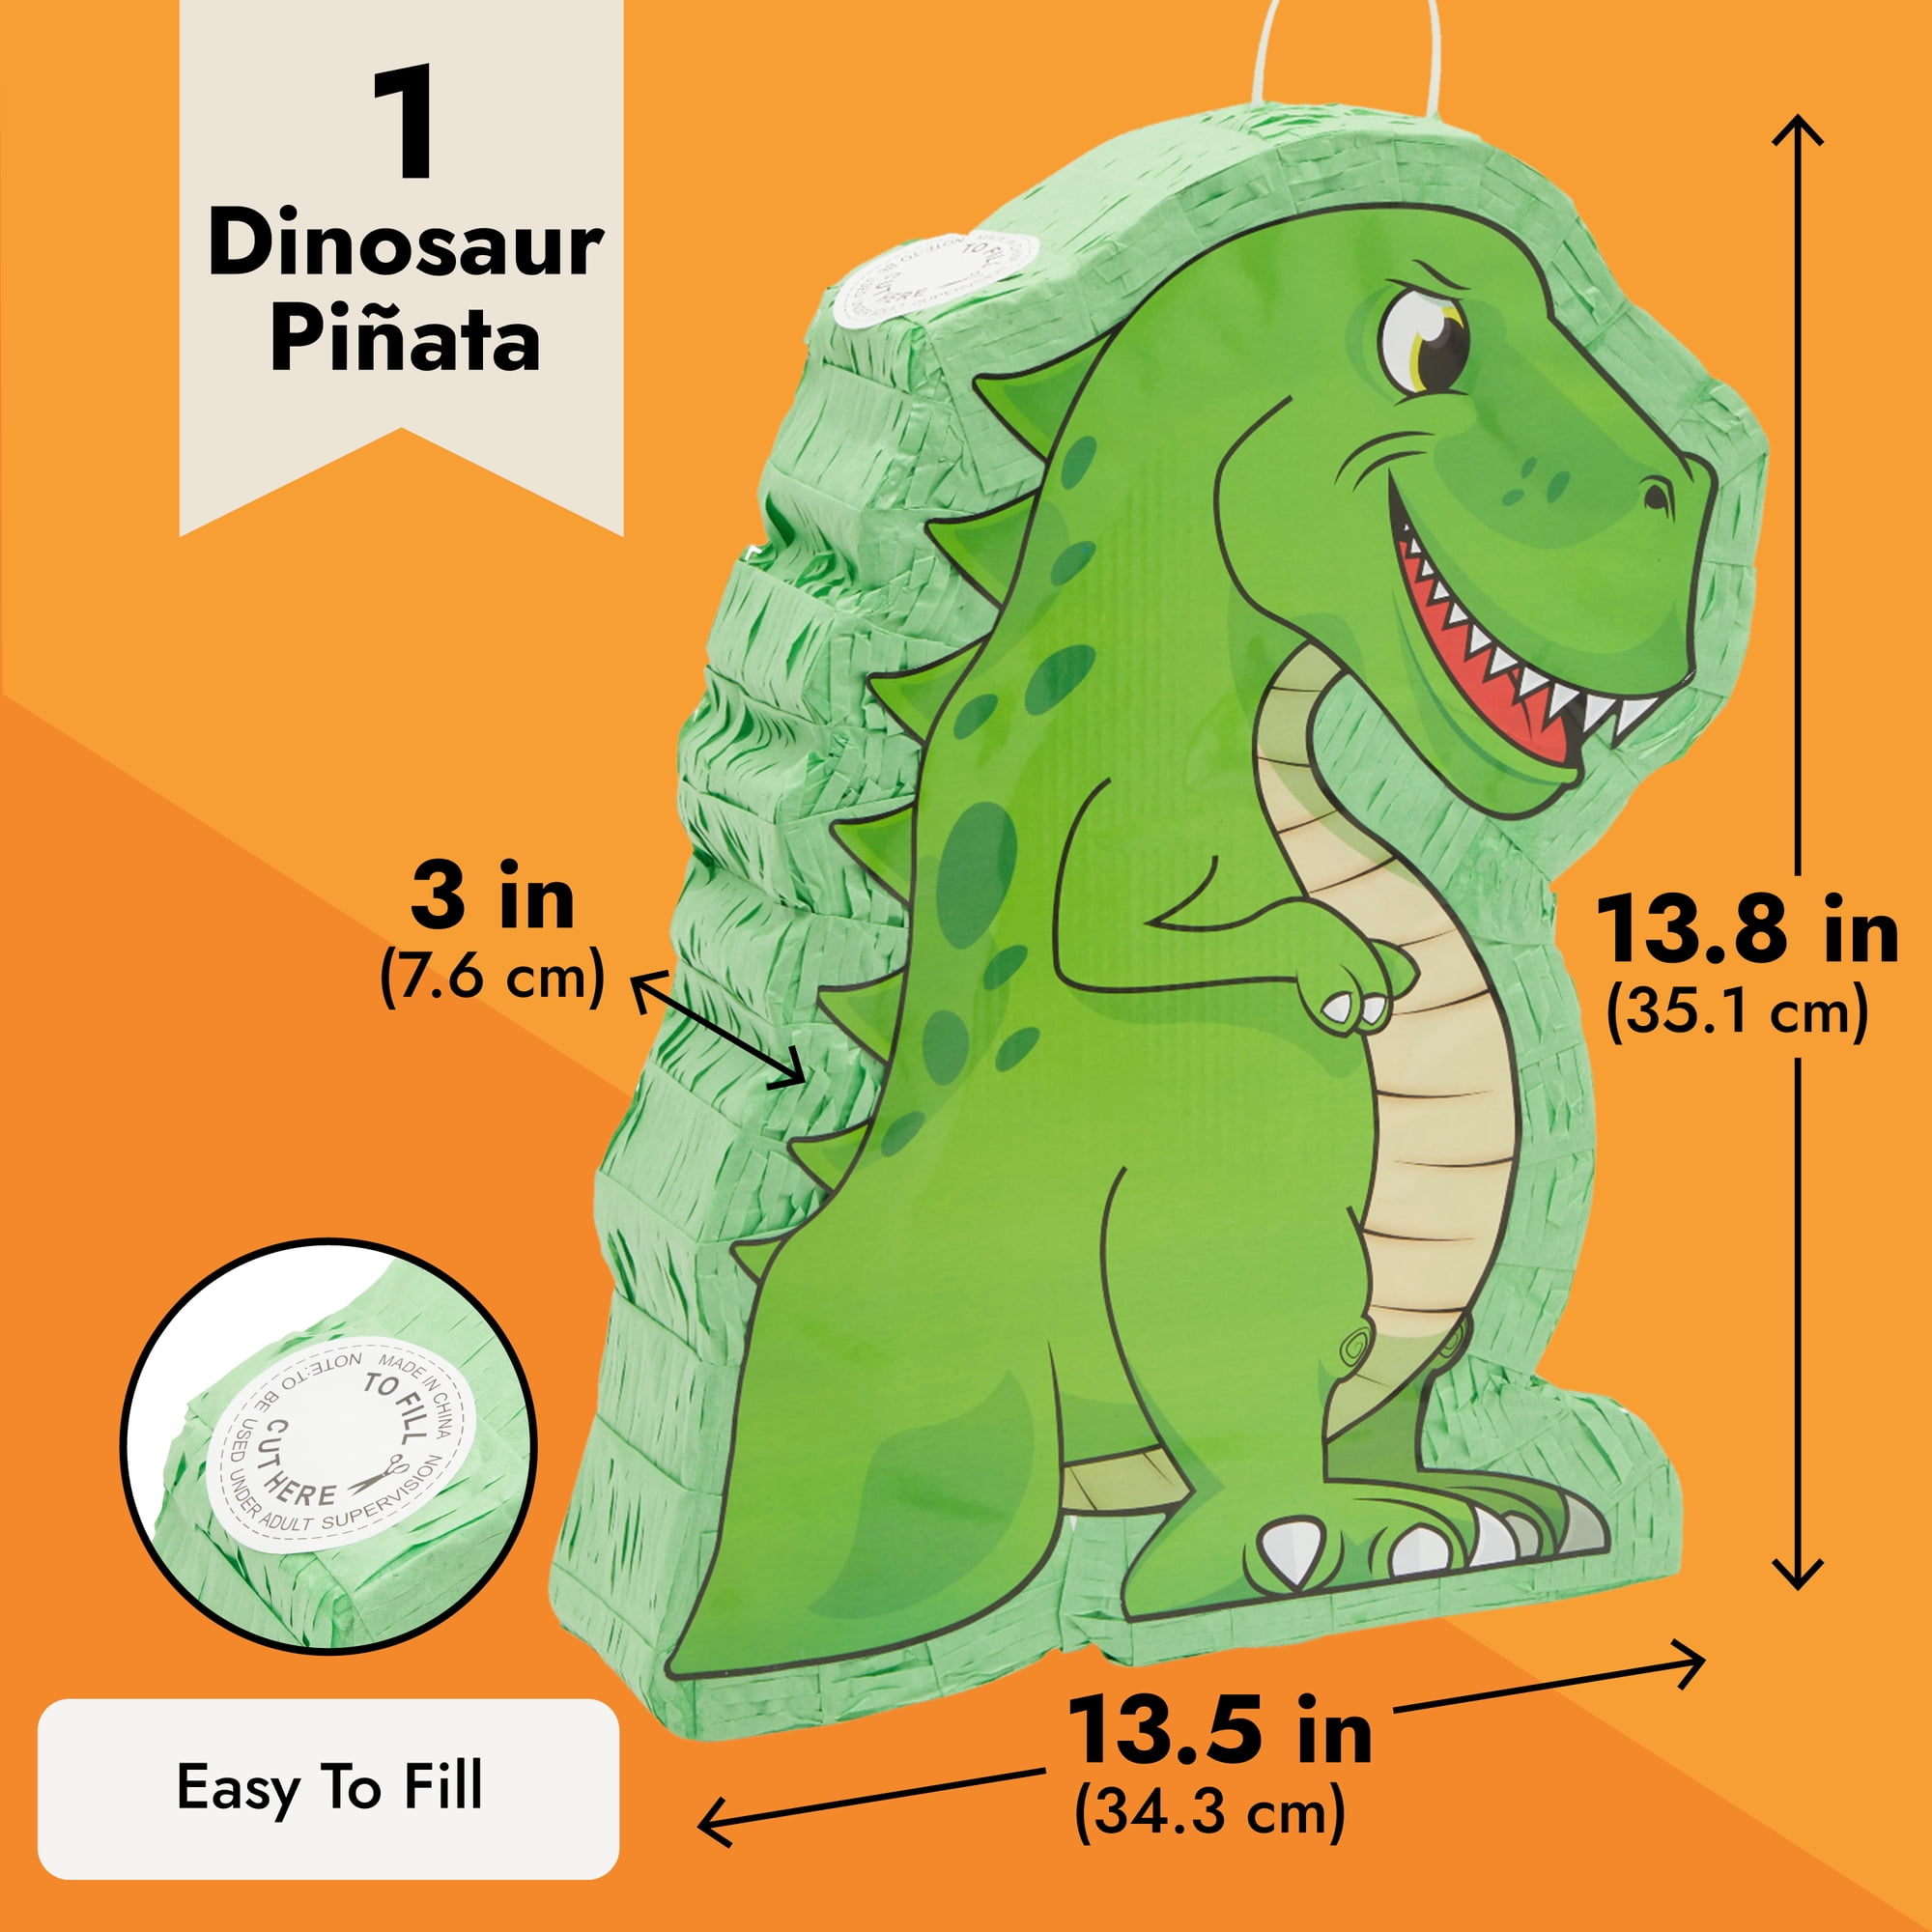 Piñata Dinosaurio second hand for 30 EUR in Diagonal in WALLAPOP